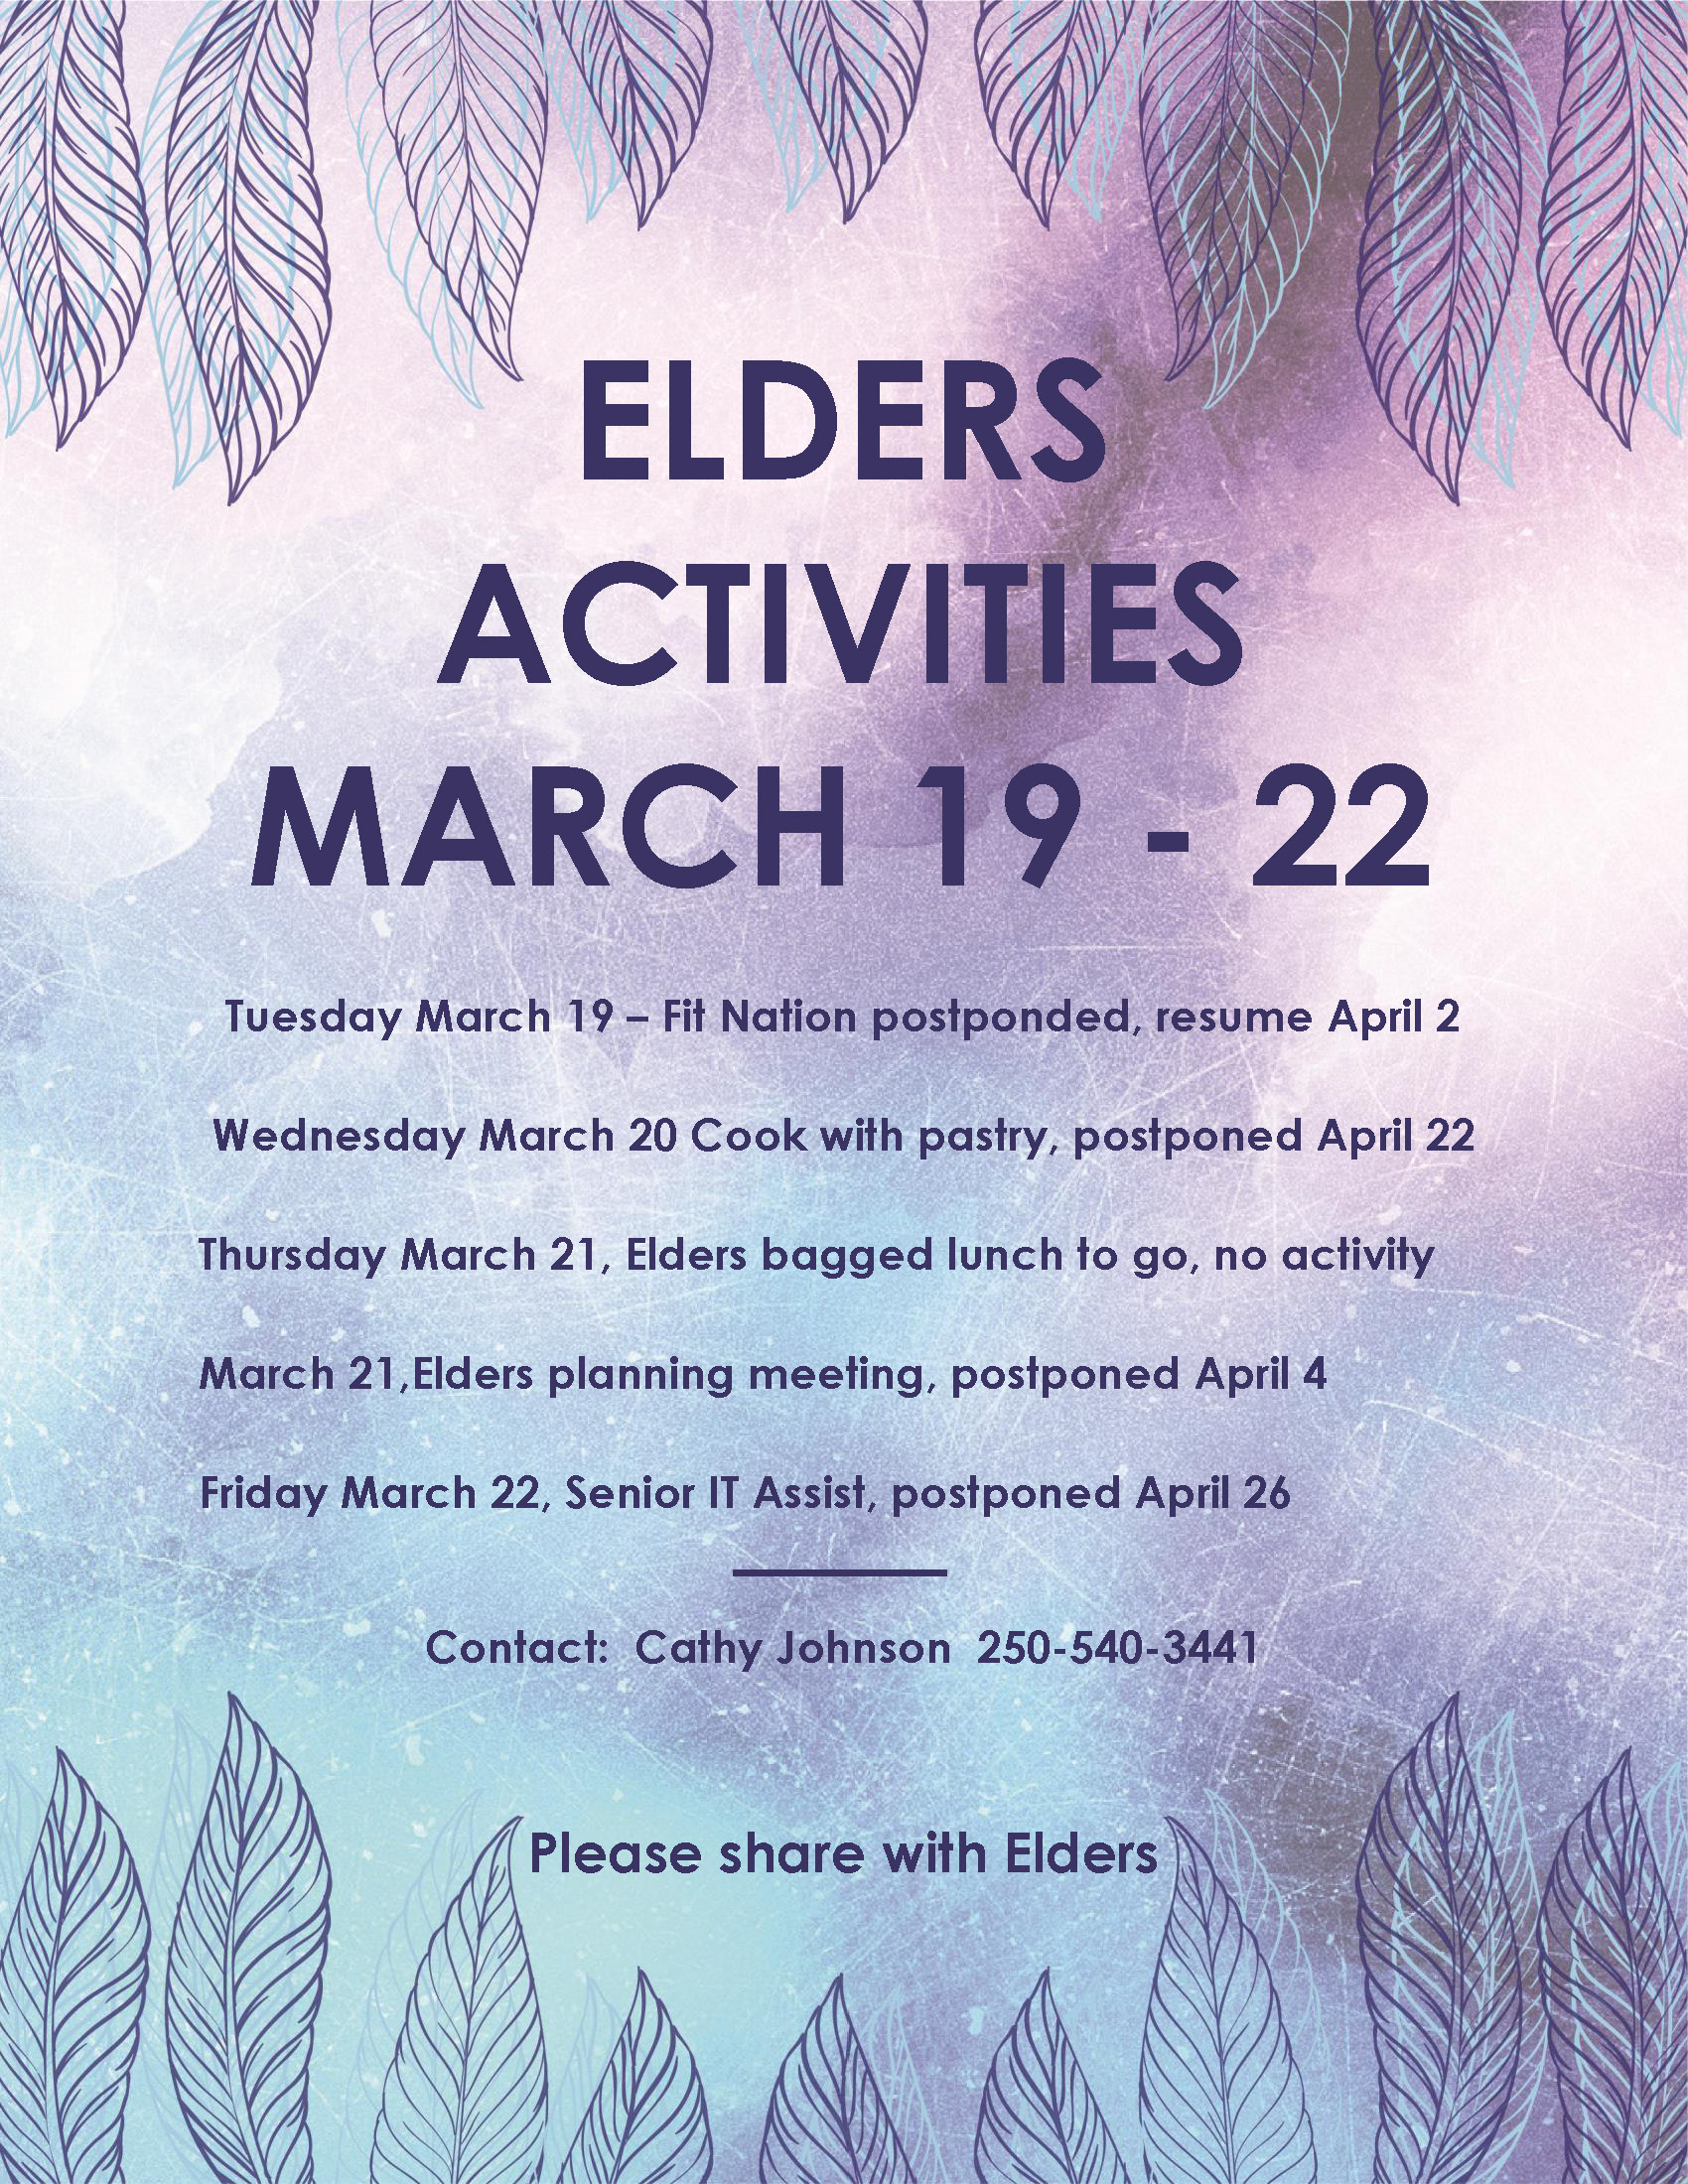 Upcoming Elders activities updates